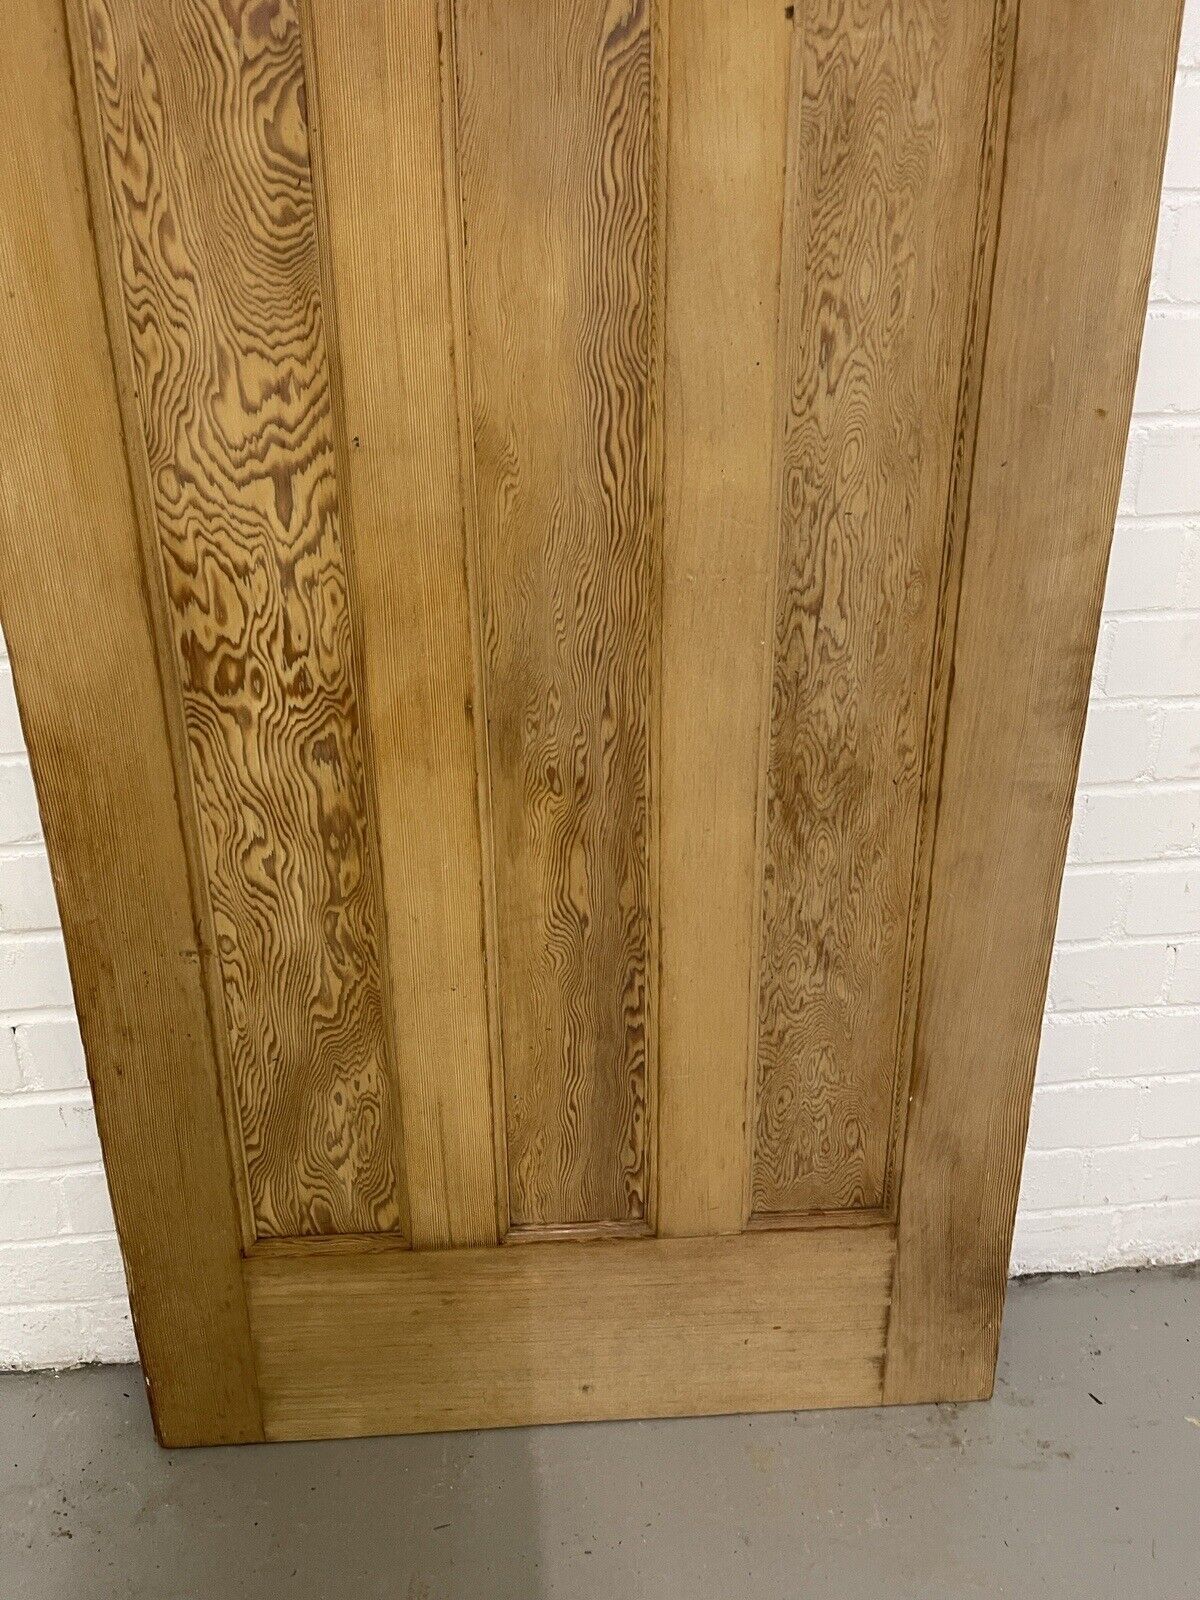 Reclaimed 1930s Edwardian 1 over 3 panel pine Internal door 1965 1960mm x 760mm